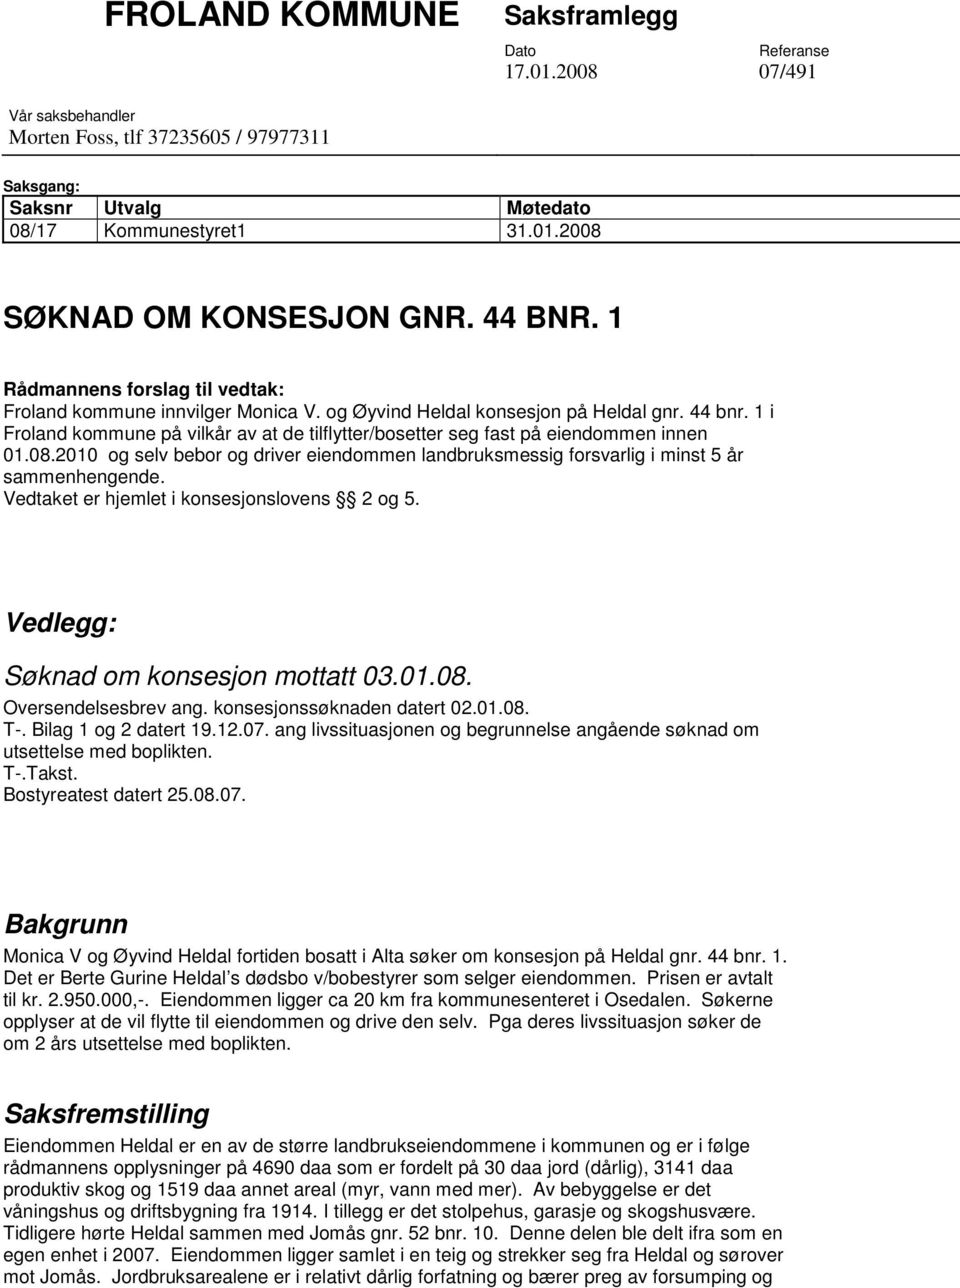 1 i Froland kommune på vilkår av at de tilflytter/bosetter seg fast på eiendommen innen 01.08.2010 og selv bebor og driver eiendommen landbruksmessig forsvarlig i minst 5 år sammenhengende.